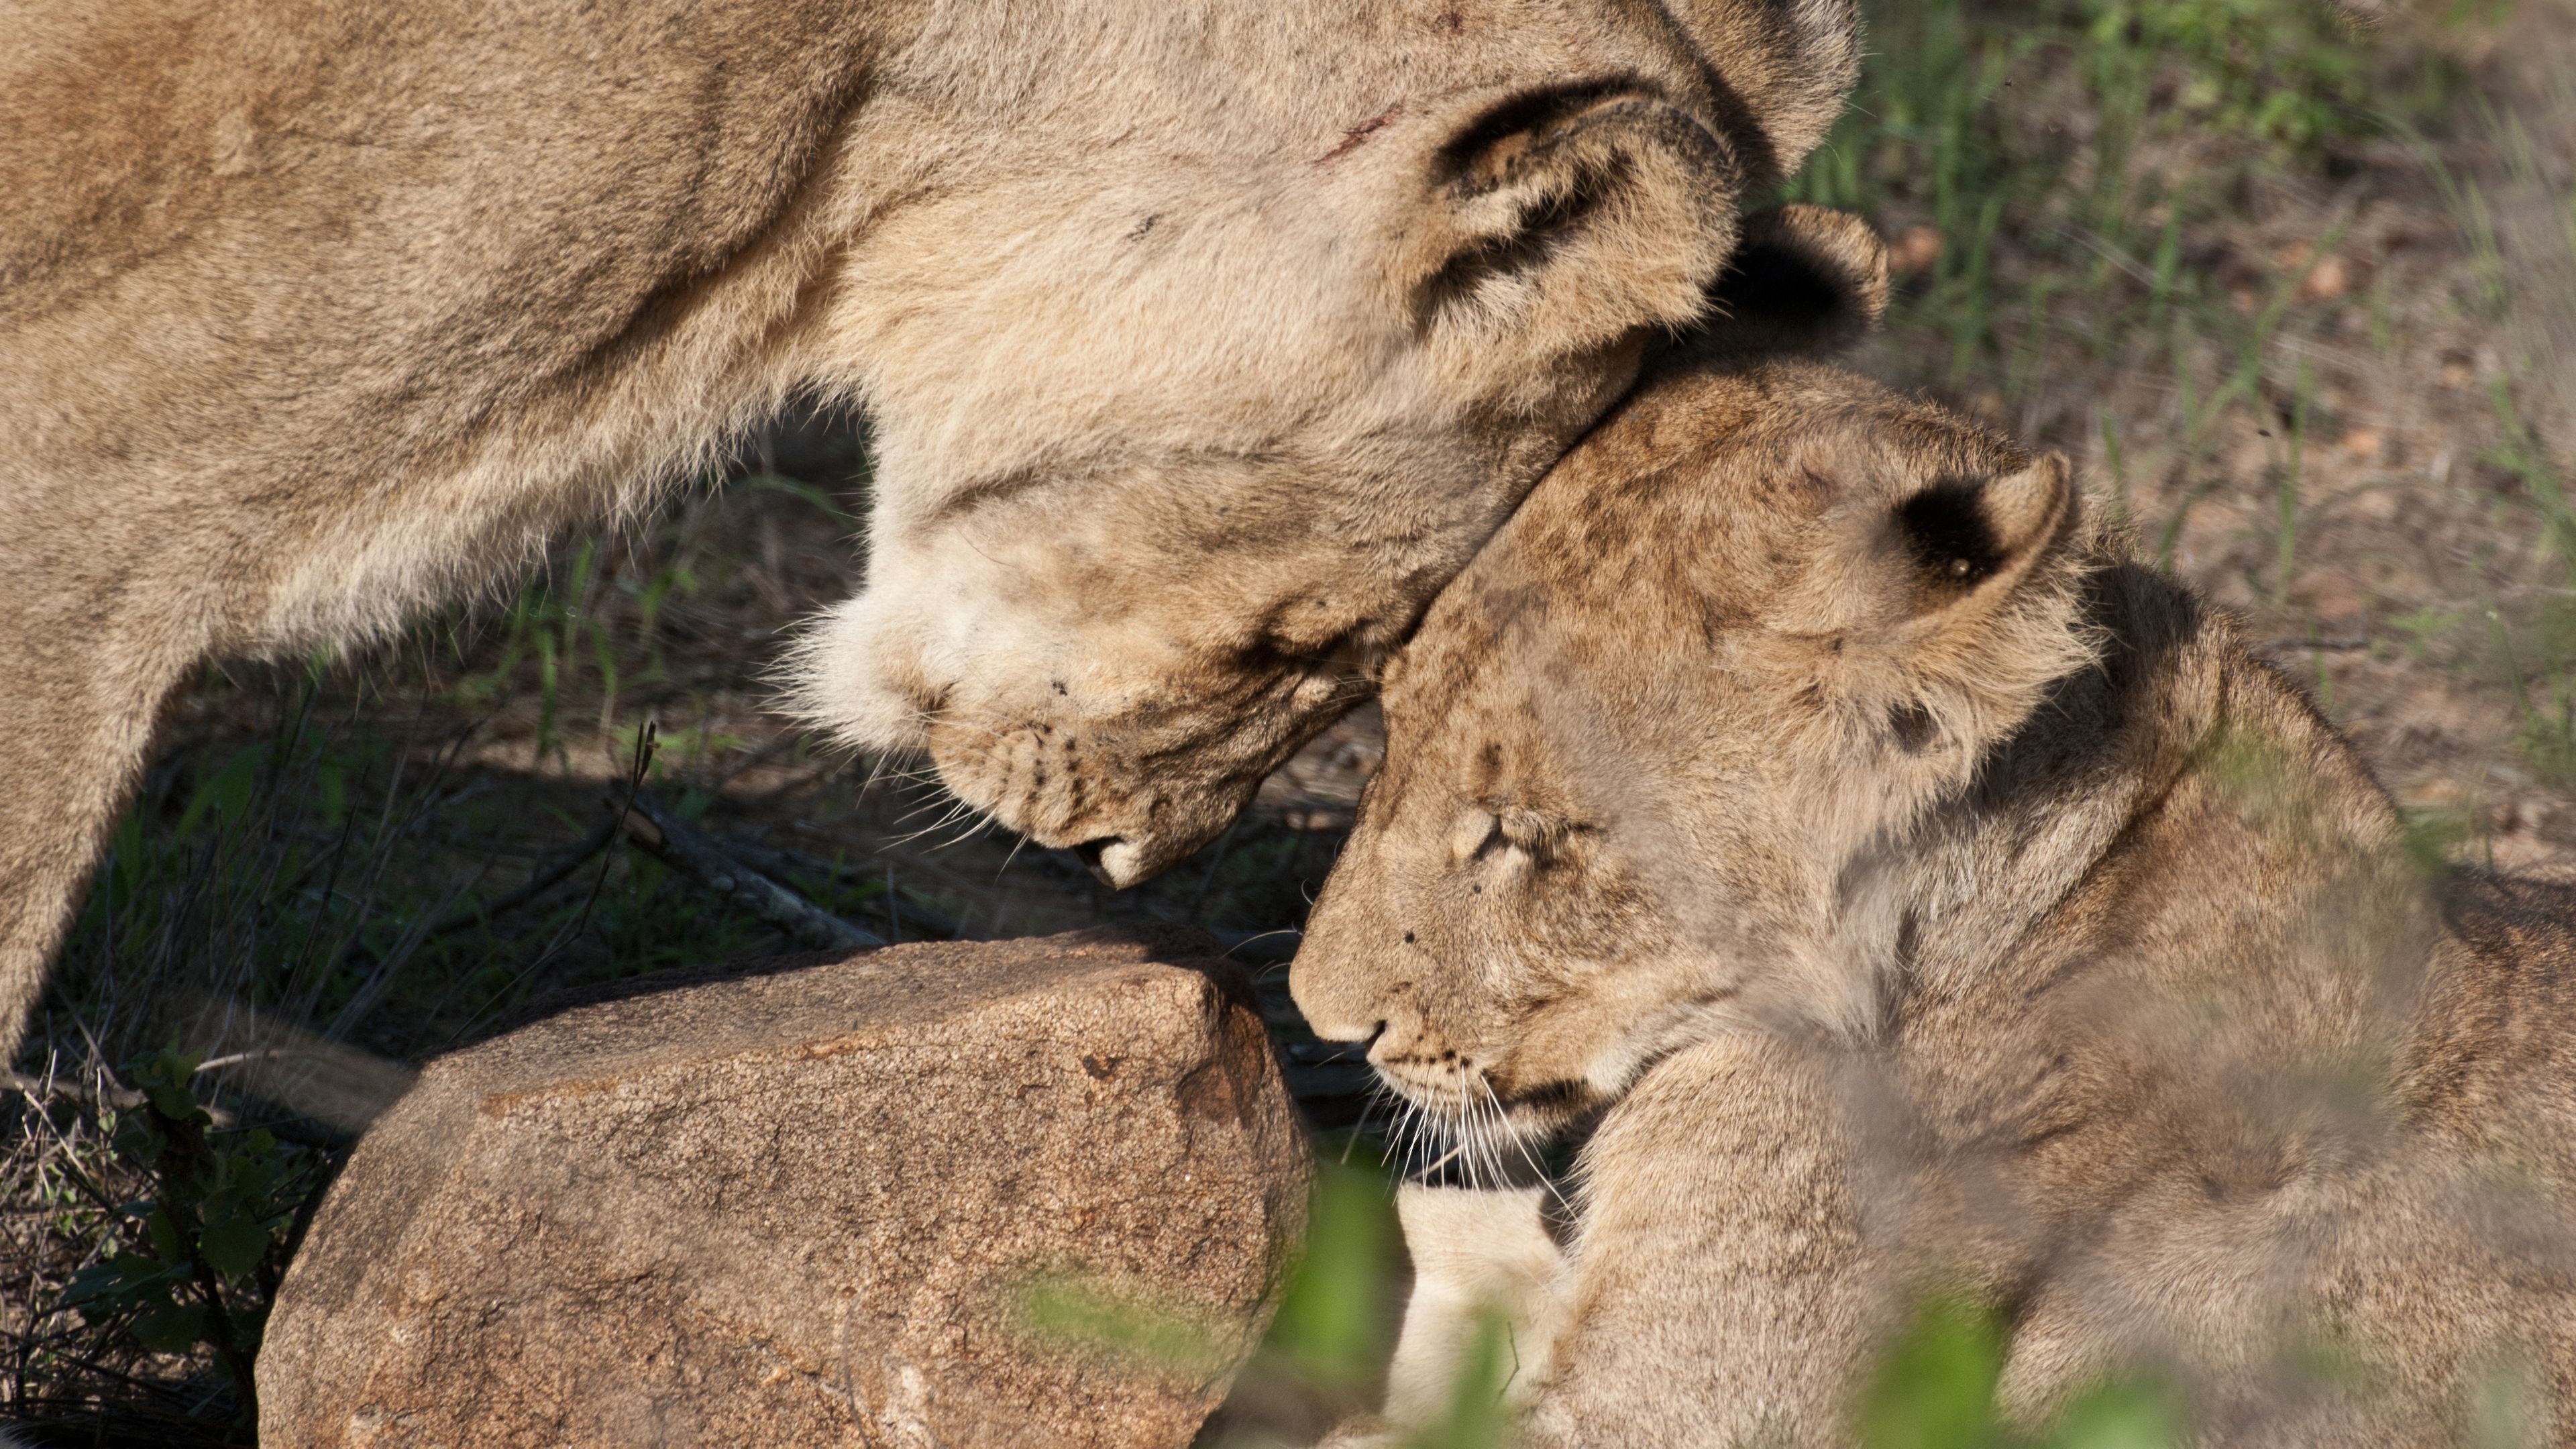 Bobachtung zweier Loewinnen in Interaktion waehrend eines Safari Trips